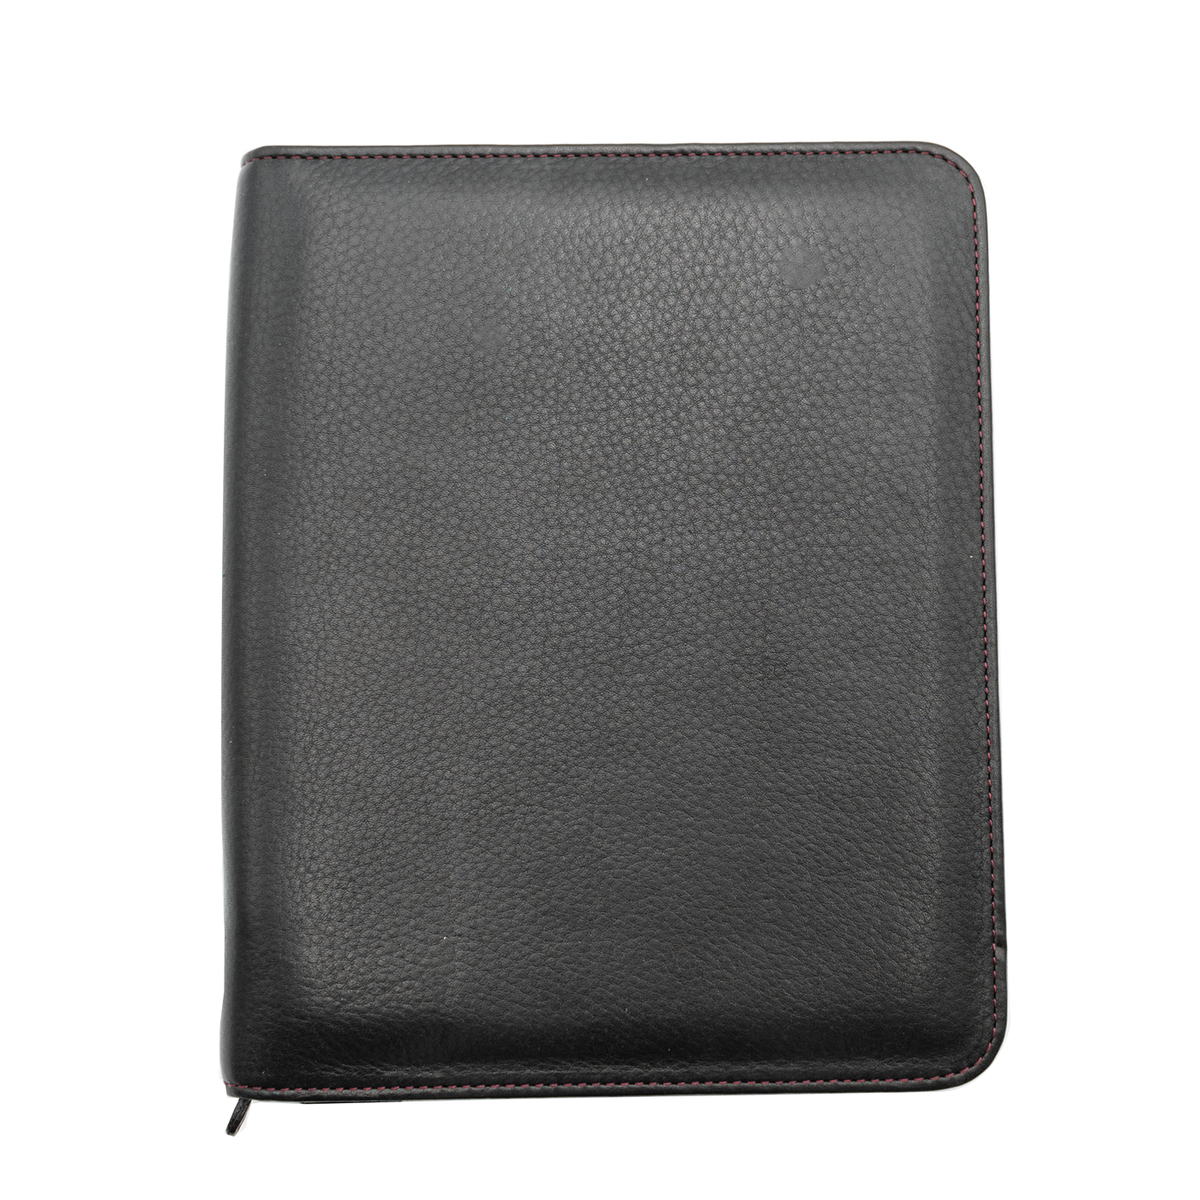 Nagasawa Leather 10 Pen Zip Case Black